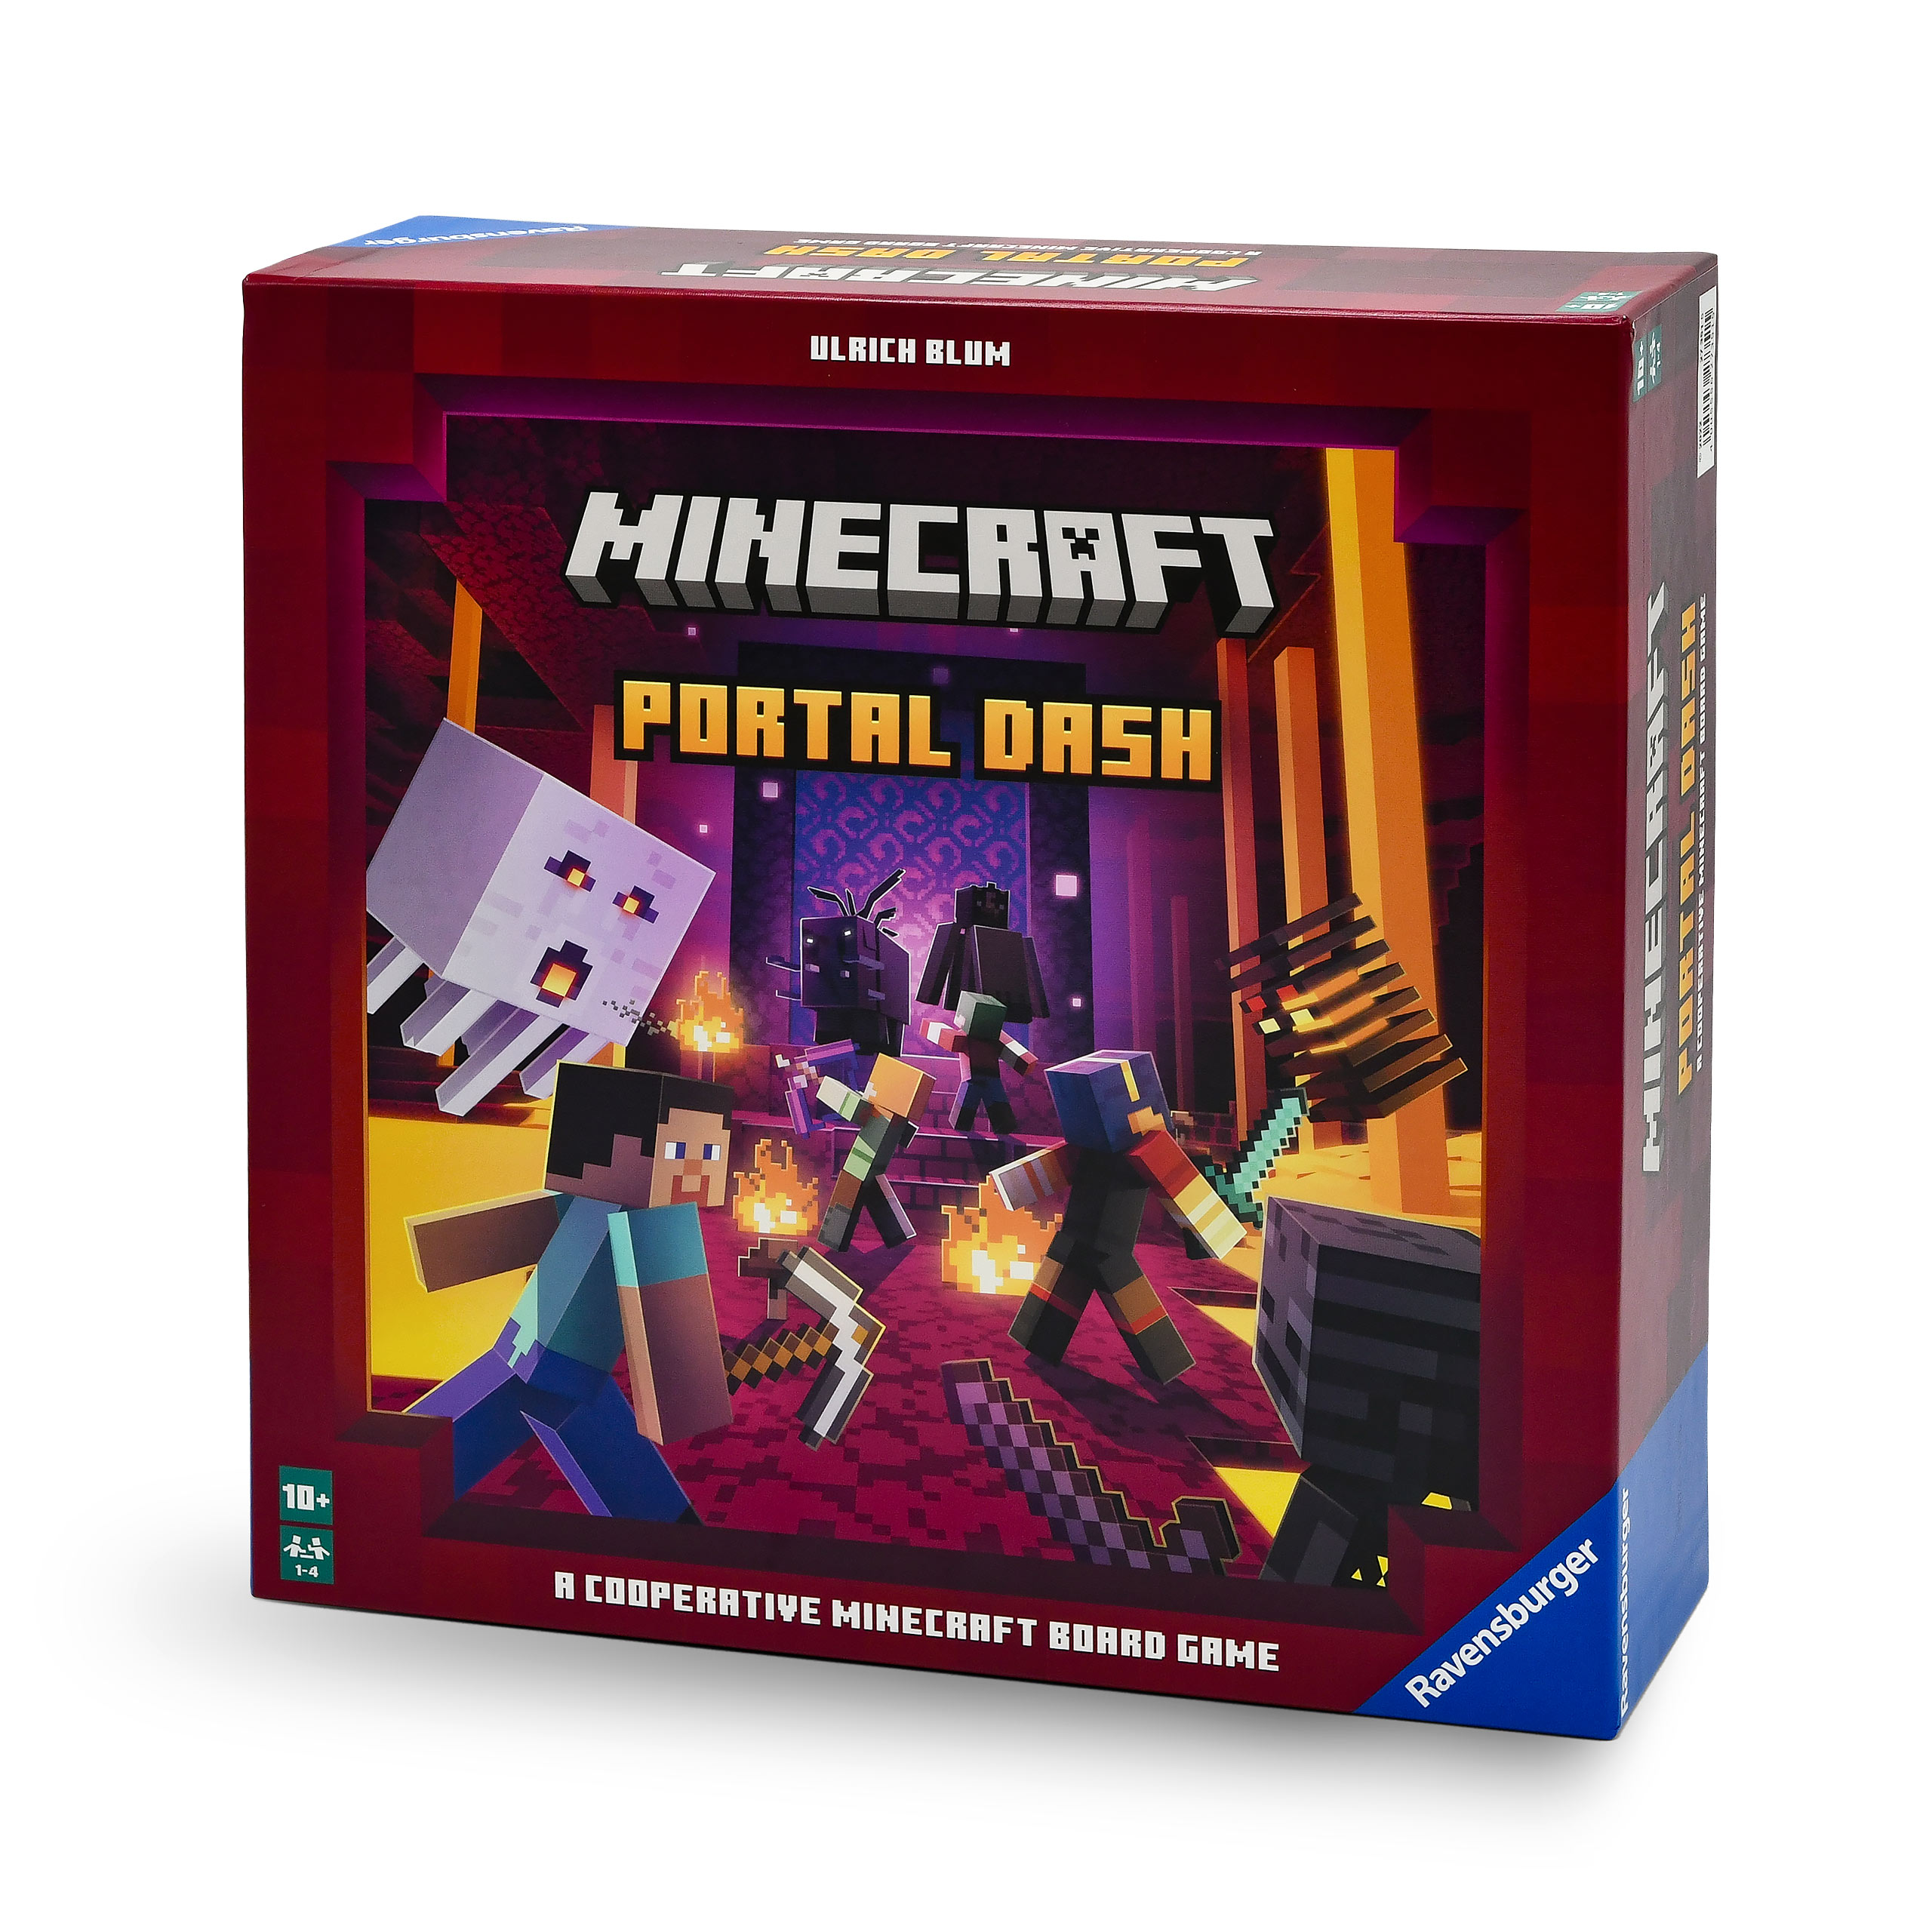 Minecraft - Portal Dash Gesellschaftsspiel